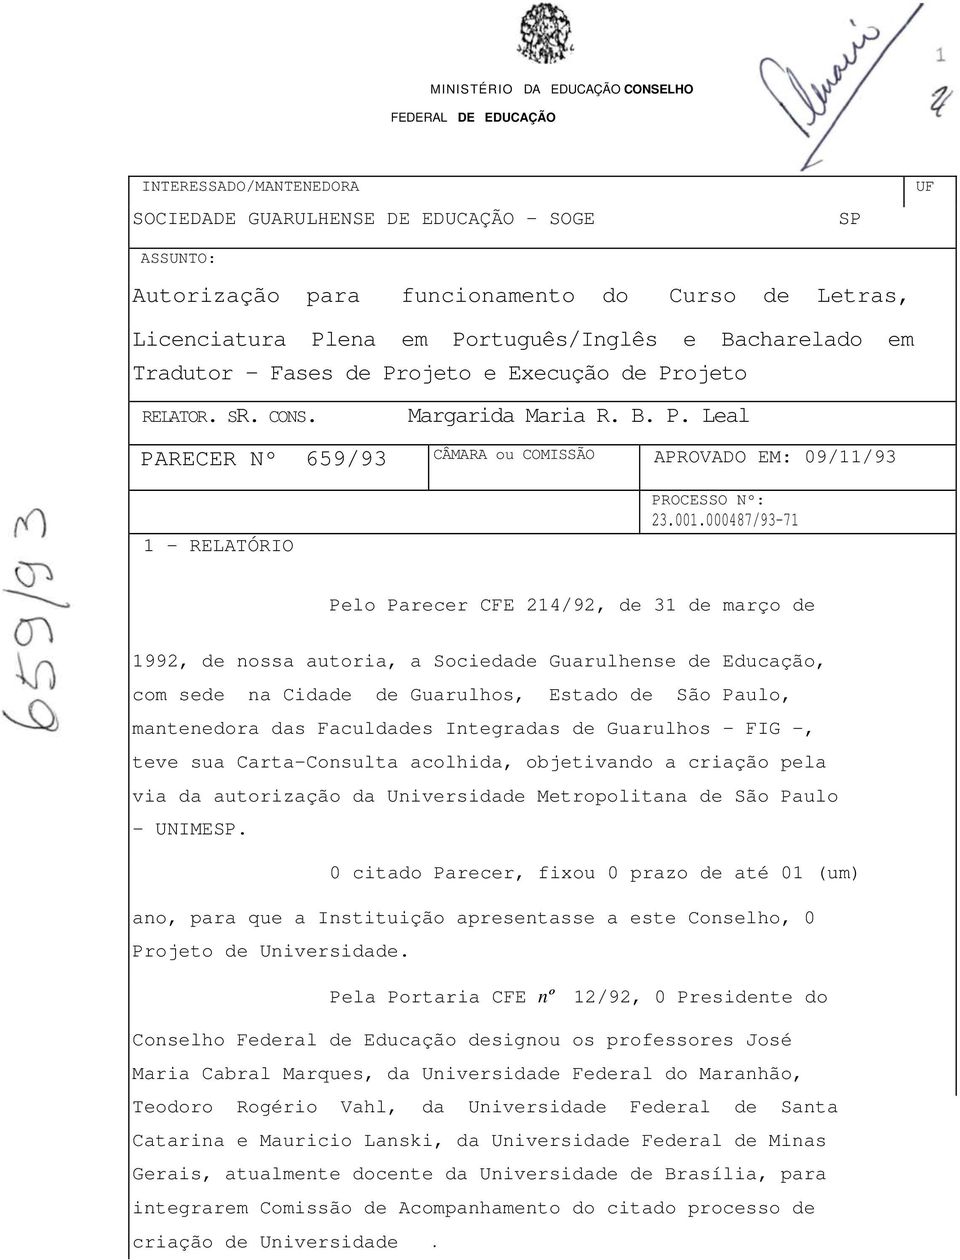 001.000487/93-71 Pelo Parecer CFE 214/92, de 31 de março de 1992, de nossa autoria, a Sociedade Guarulhense de Educação, com sede na Cidade de Guarulhos, Estado de São Paulo, mantenedora das